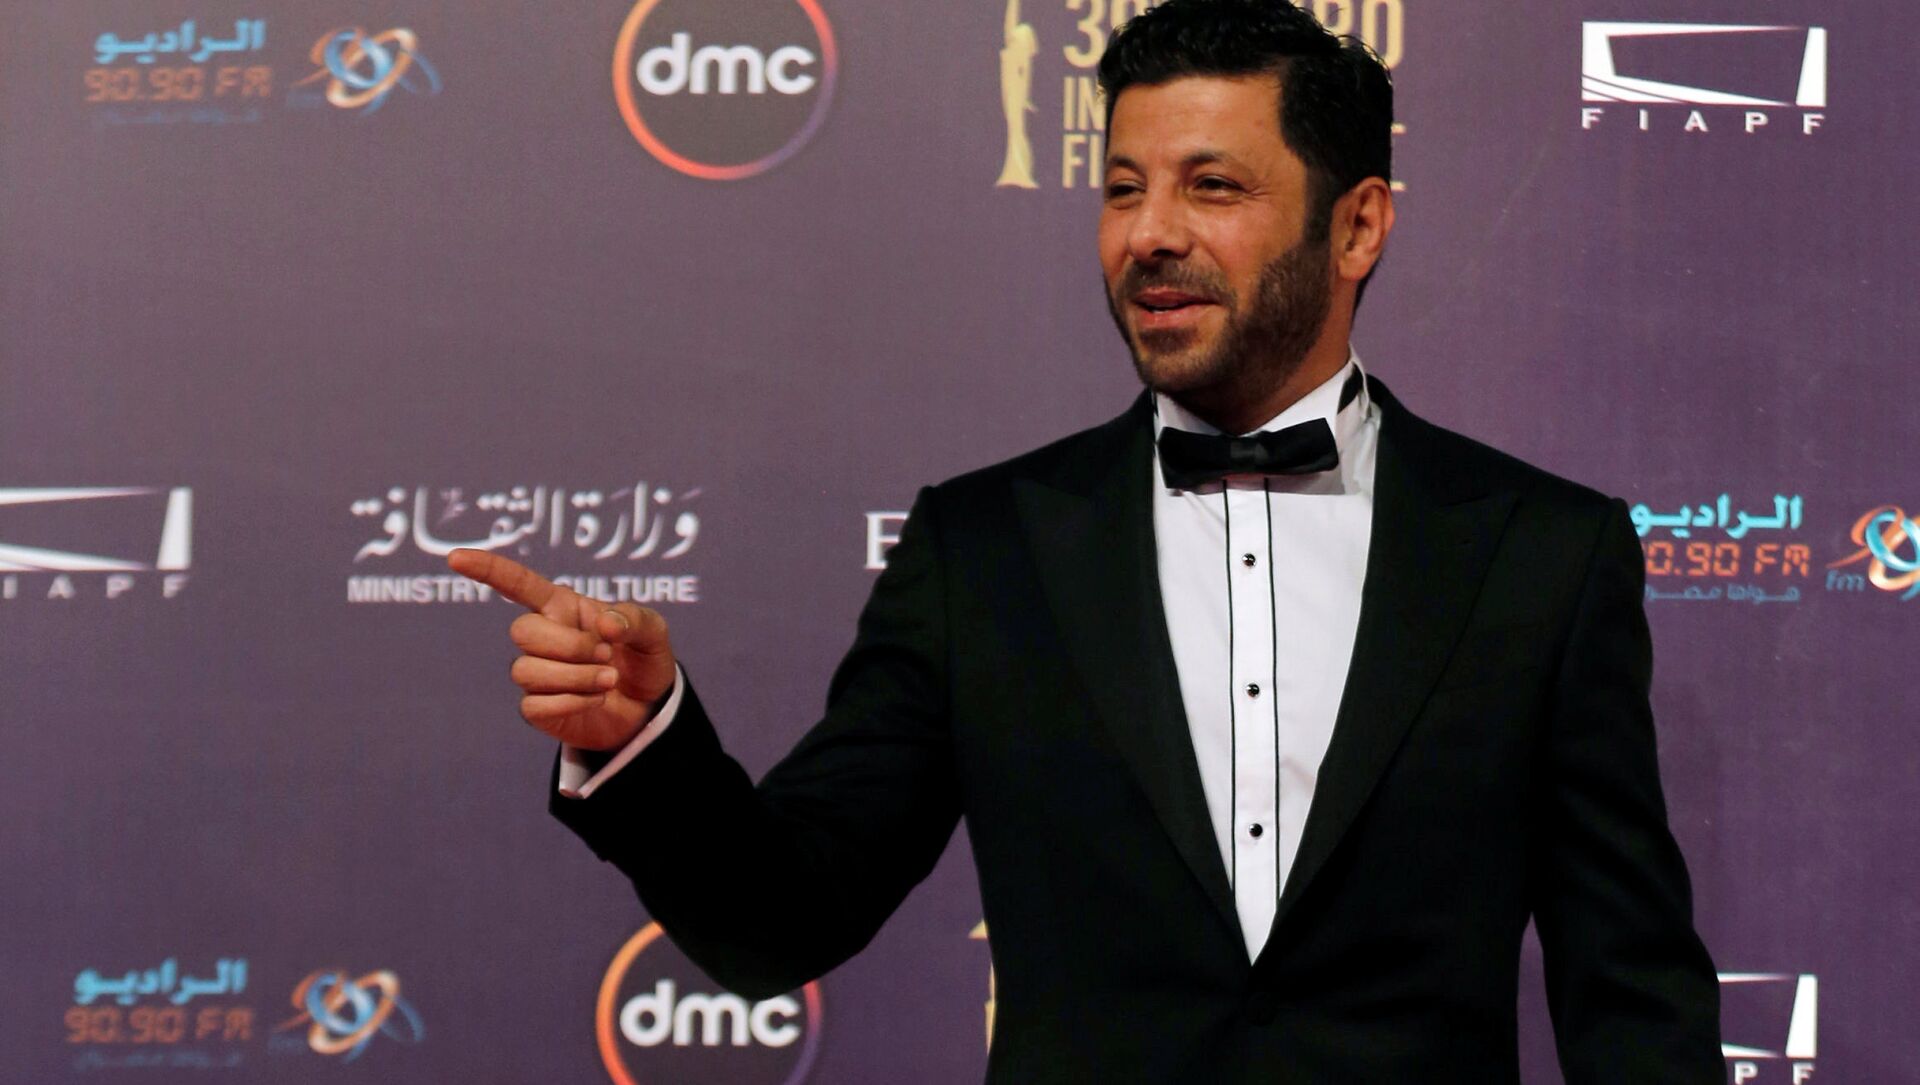  الممثل المصري إياد نصار خلال مهرجان القاهرة السينمائي الـ 39، مصر 21 نوفمبر/ كانون الأول 2017 - سبوتنيك عربي, 1920, 28.04.2021